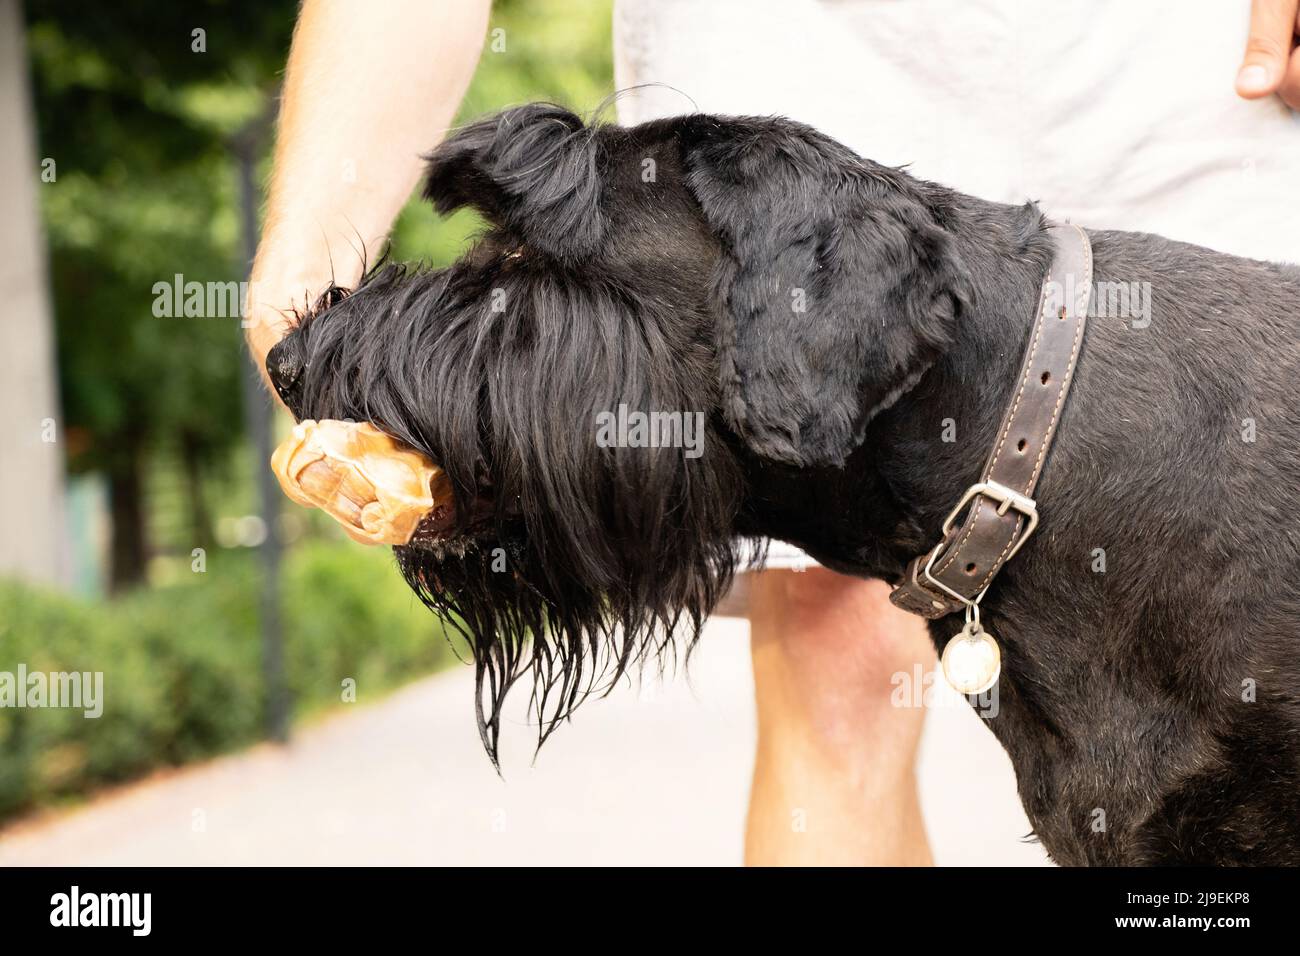 Schnauzer gigante con un osso nei denti, cibo per cani, un cane su una passeggiata in un parco in Ucraina Foto Stock